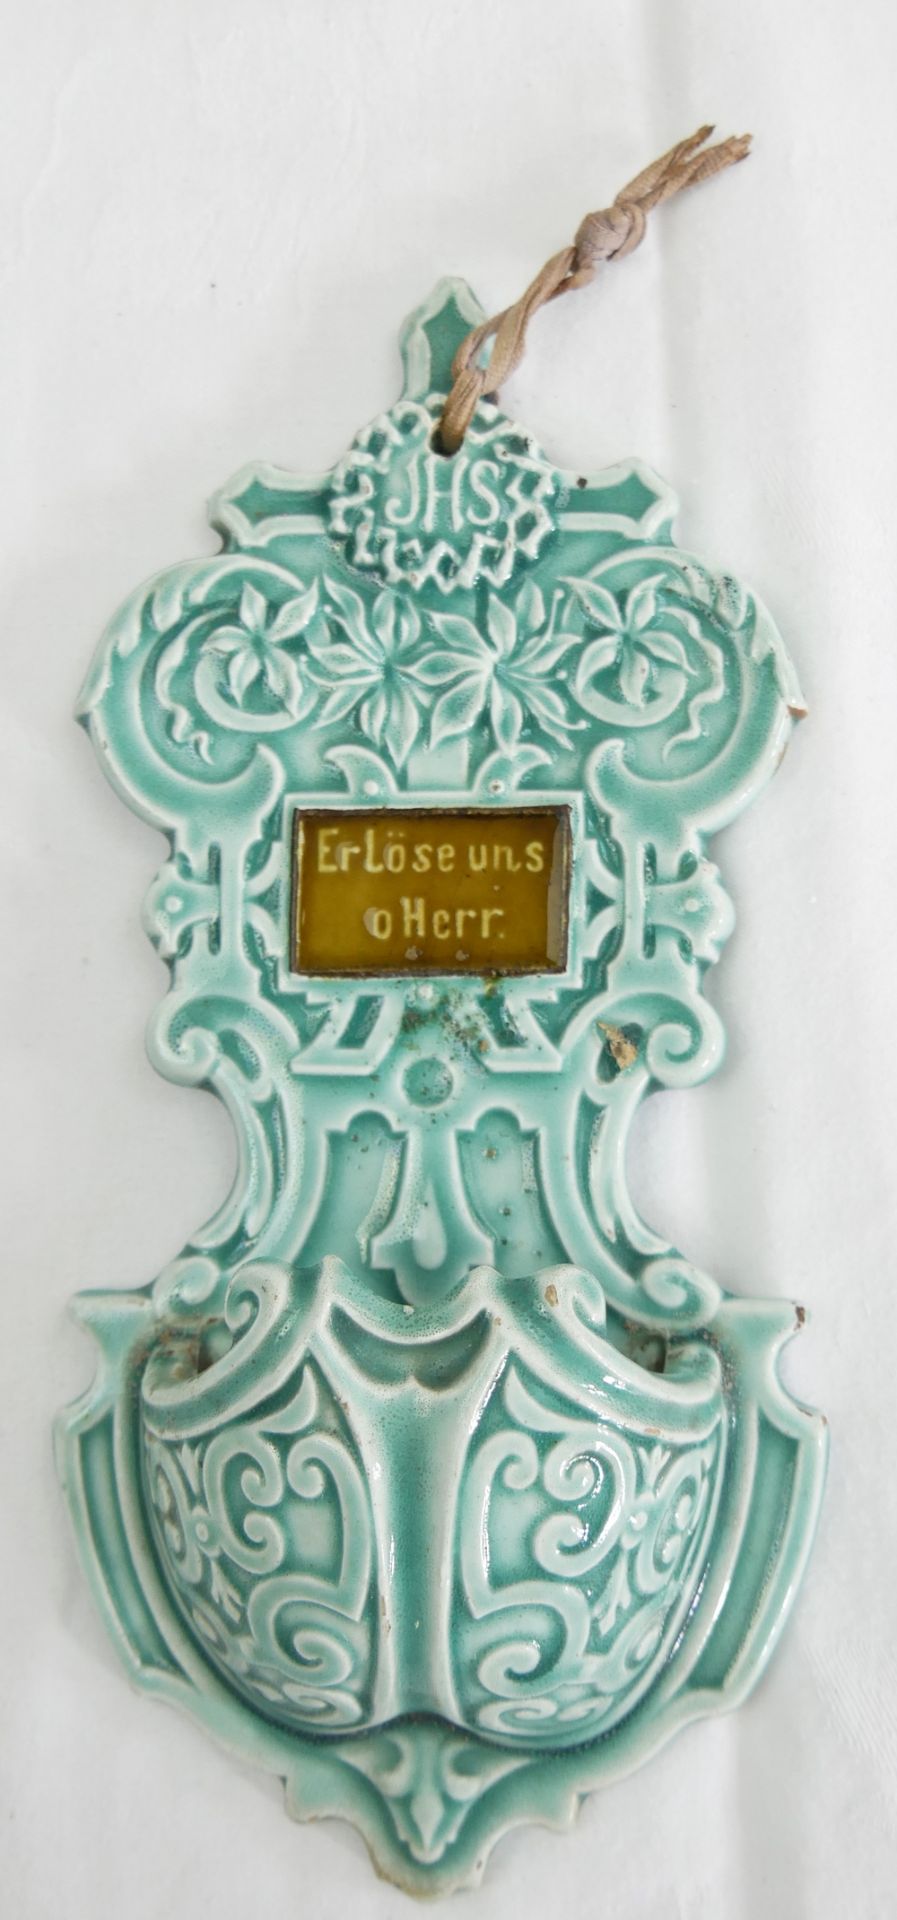 Altes Weihwassergefäß V&B, Modell 669 "Erlöse uns o Herr". um 1900.n Höhe ca. 22 cm. Chips